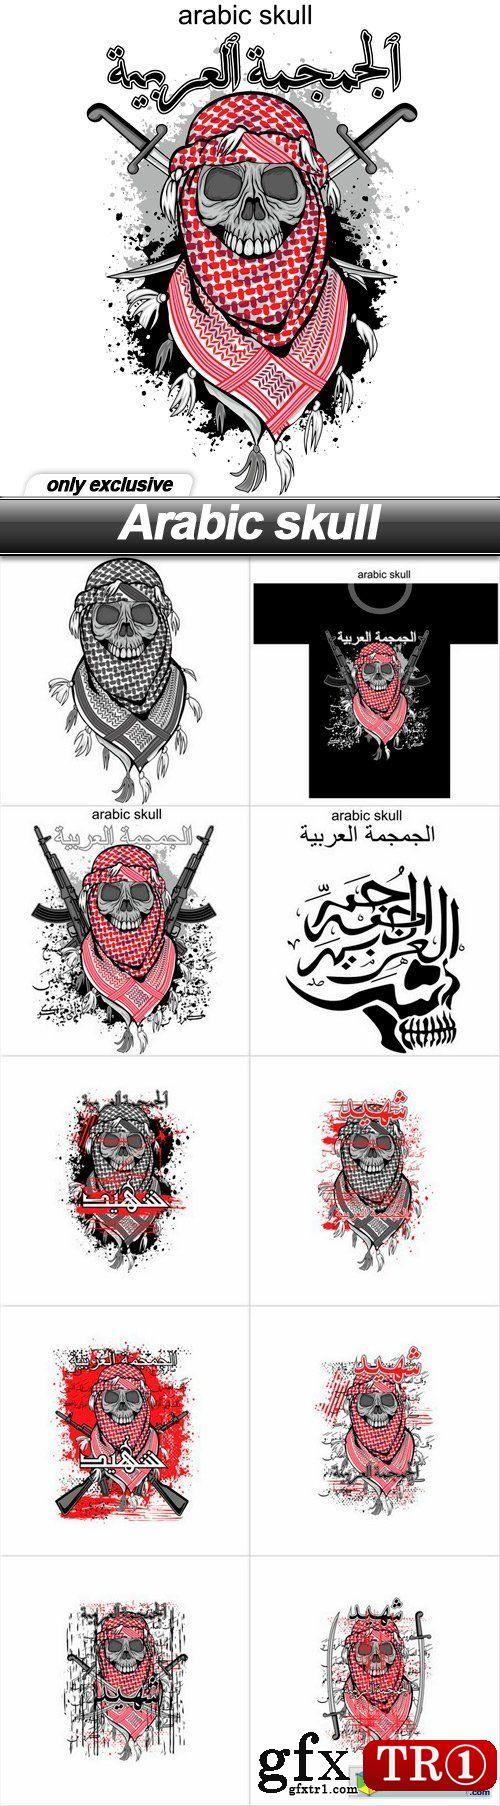 阿拉伯图案纹身 阿拉伯风格纹身